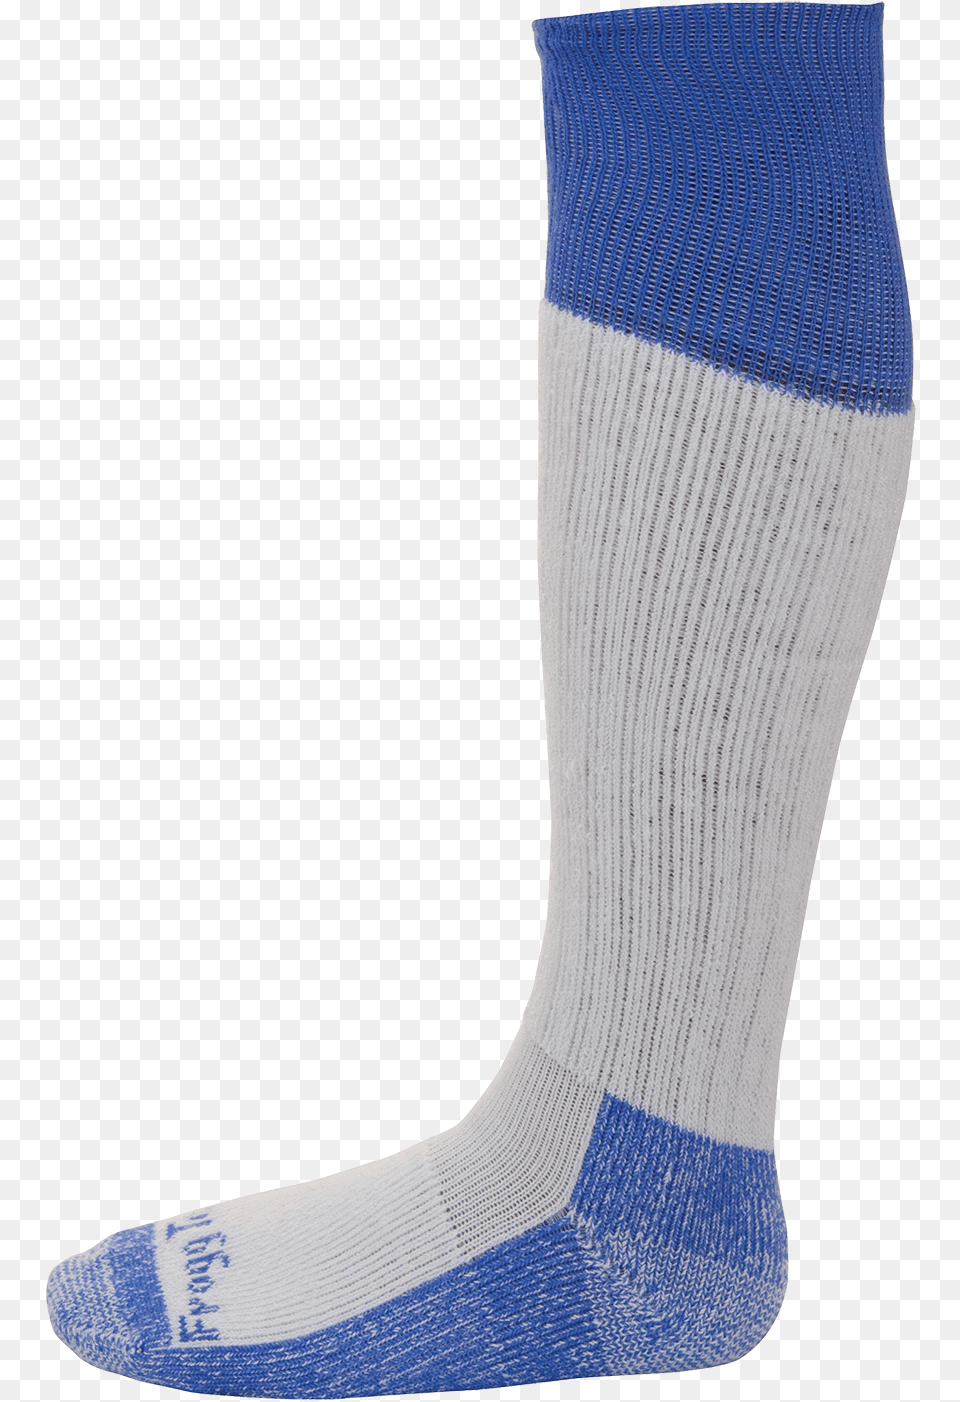 Cooling Socks Socks Coolmax, Clothing, Hosiery, Sock Png Image